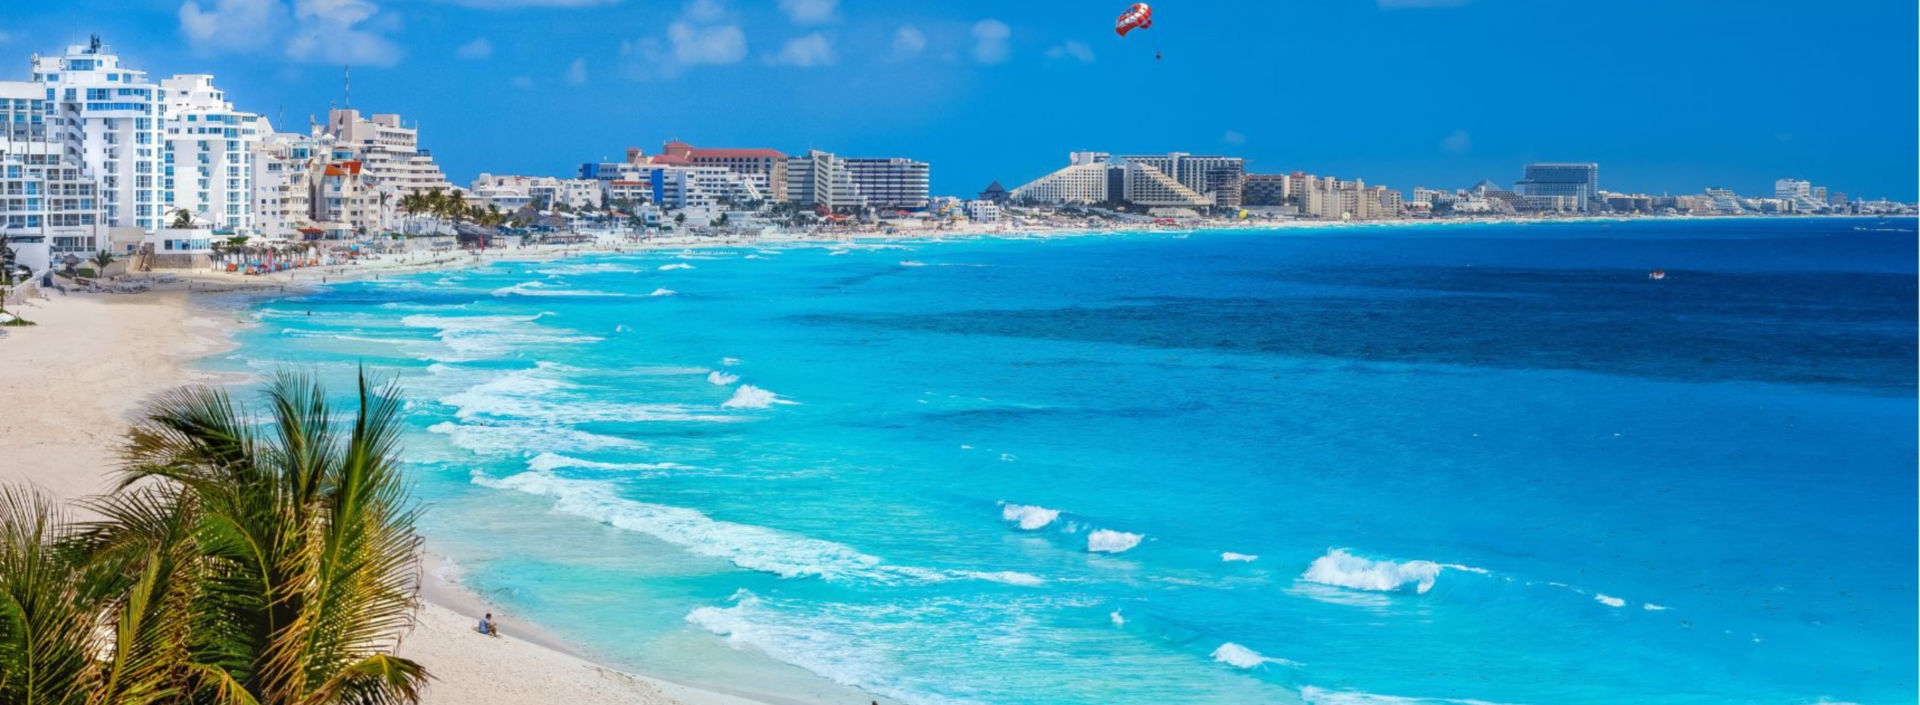 Vista panorámica de playa y ciudad de Cancún